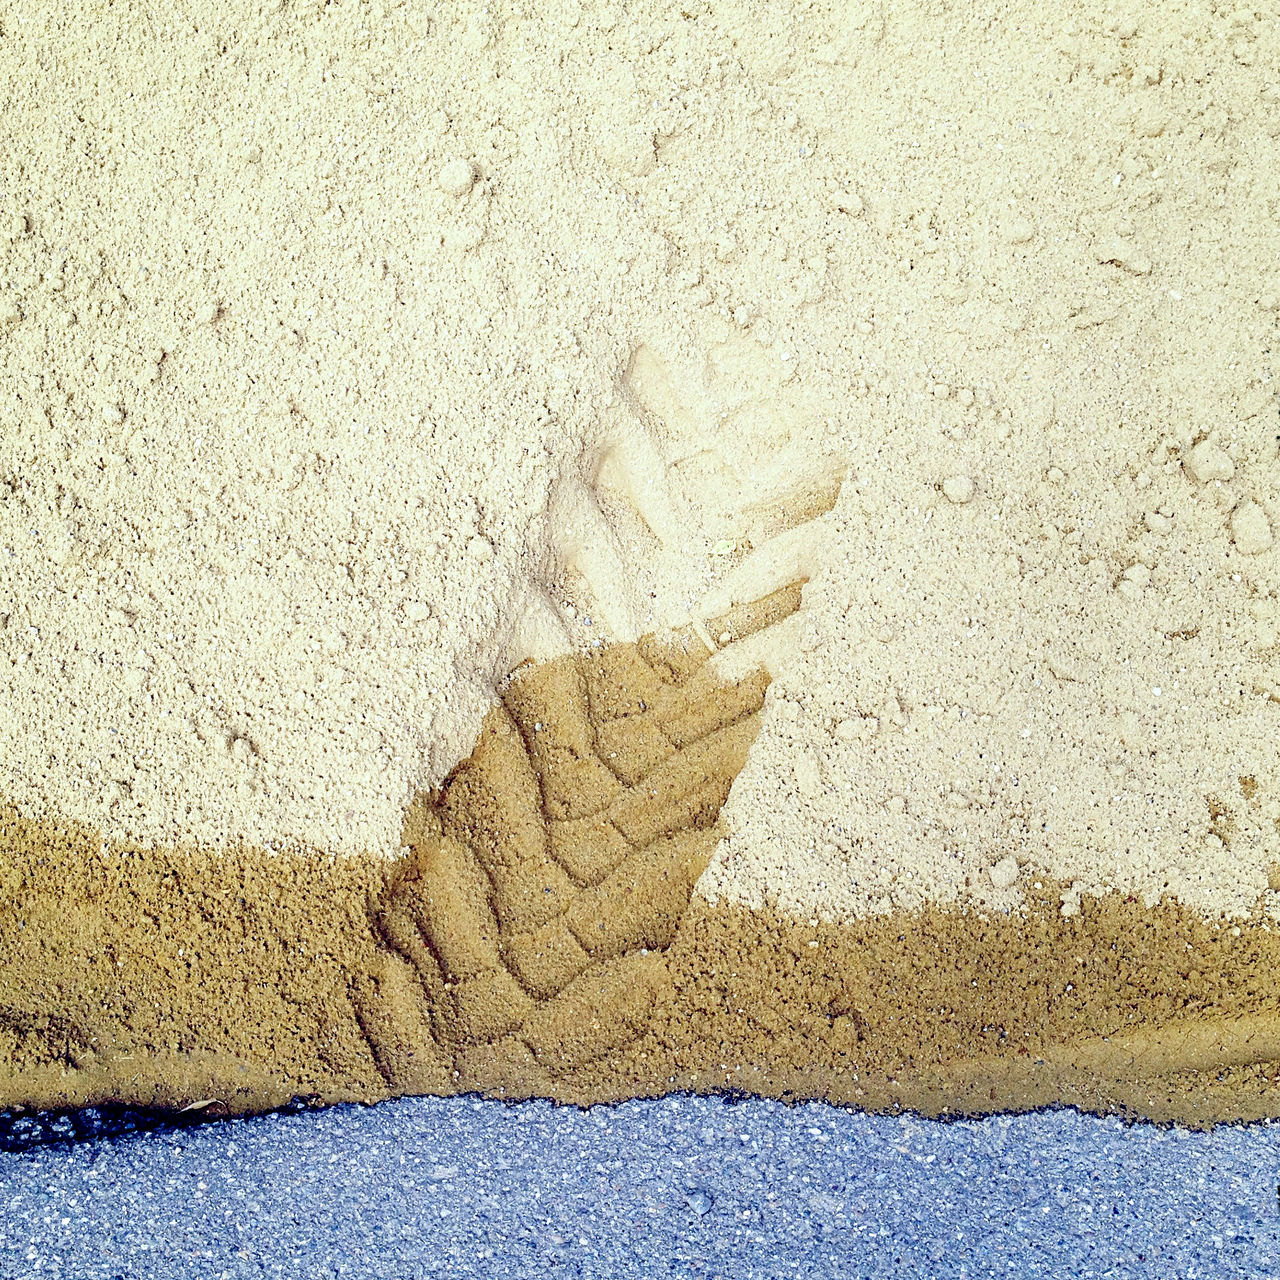 das untere Zehntel des Bilds zeigt eine Teeroberfläche, auf der ein gelblicher Sandhaufen liegt. Die Spur eines Gabelstaplers drückt sich im feuchten Sand ab.